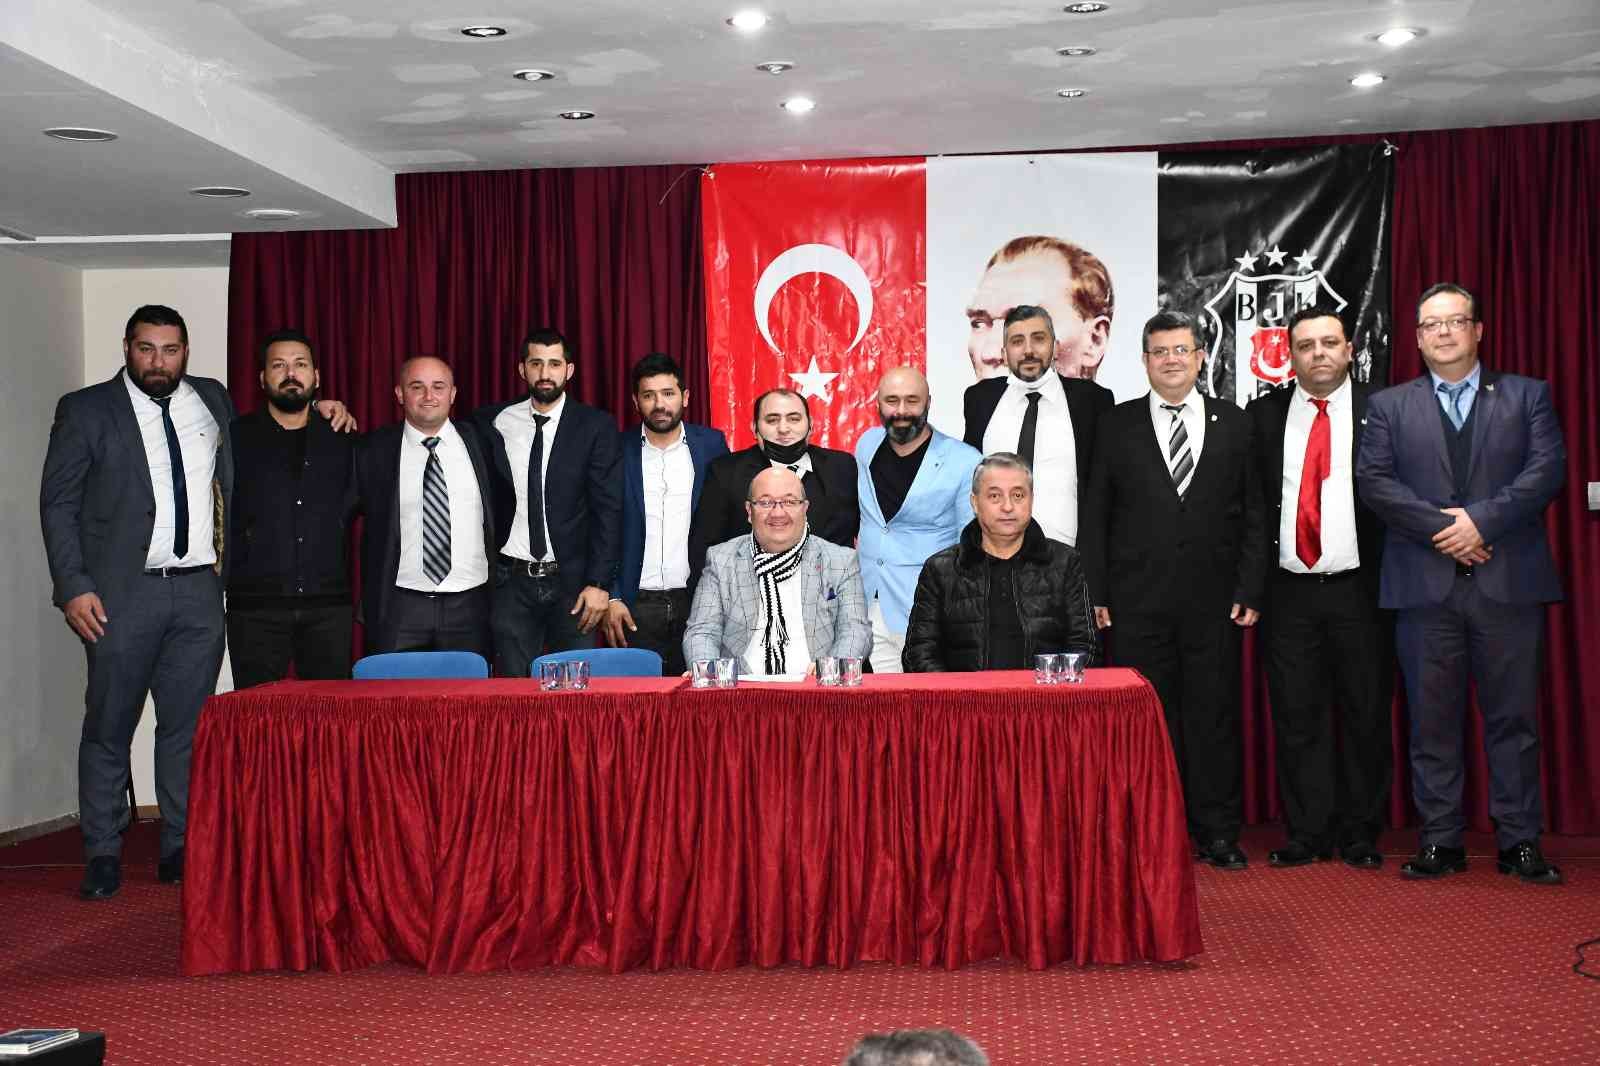 Söke Kartalları Beşiktaşlılar Derneği genel kurul toplantısını yaptı #aydin